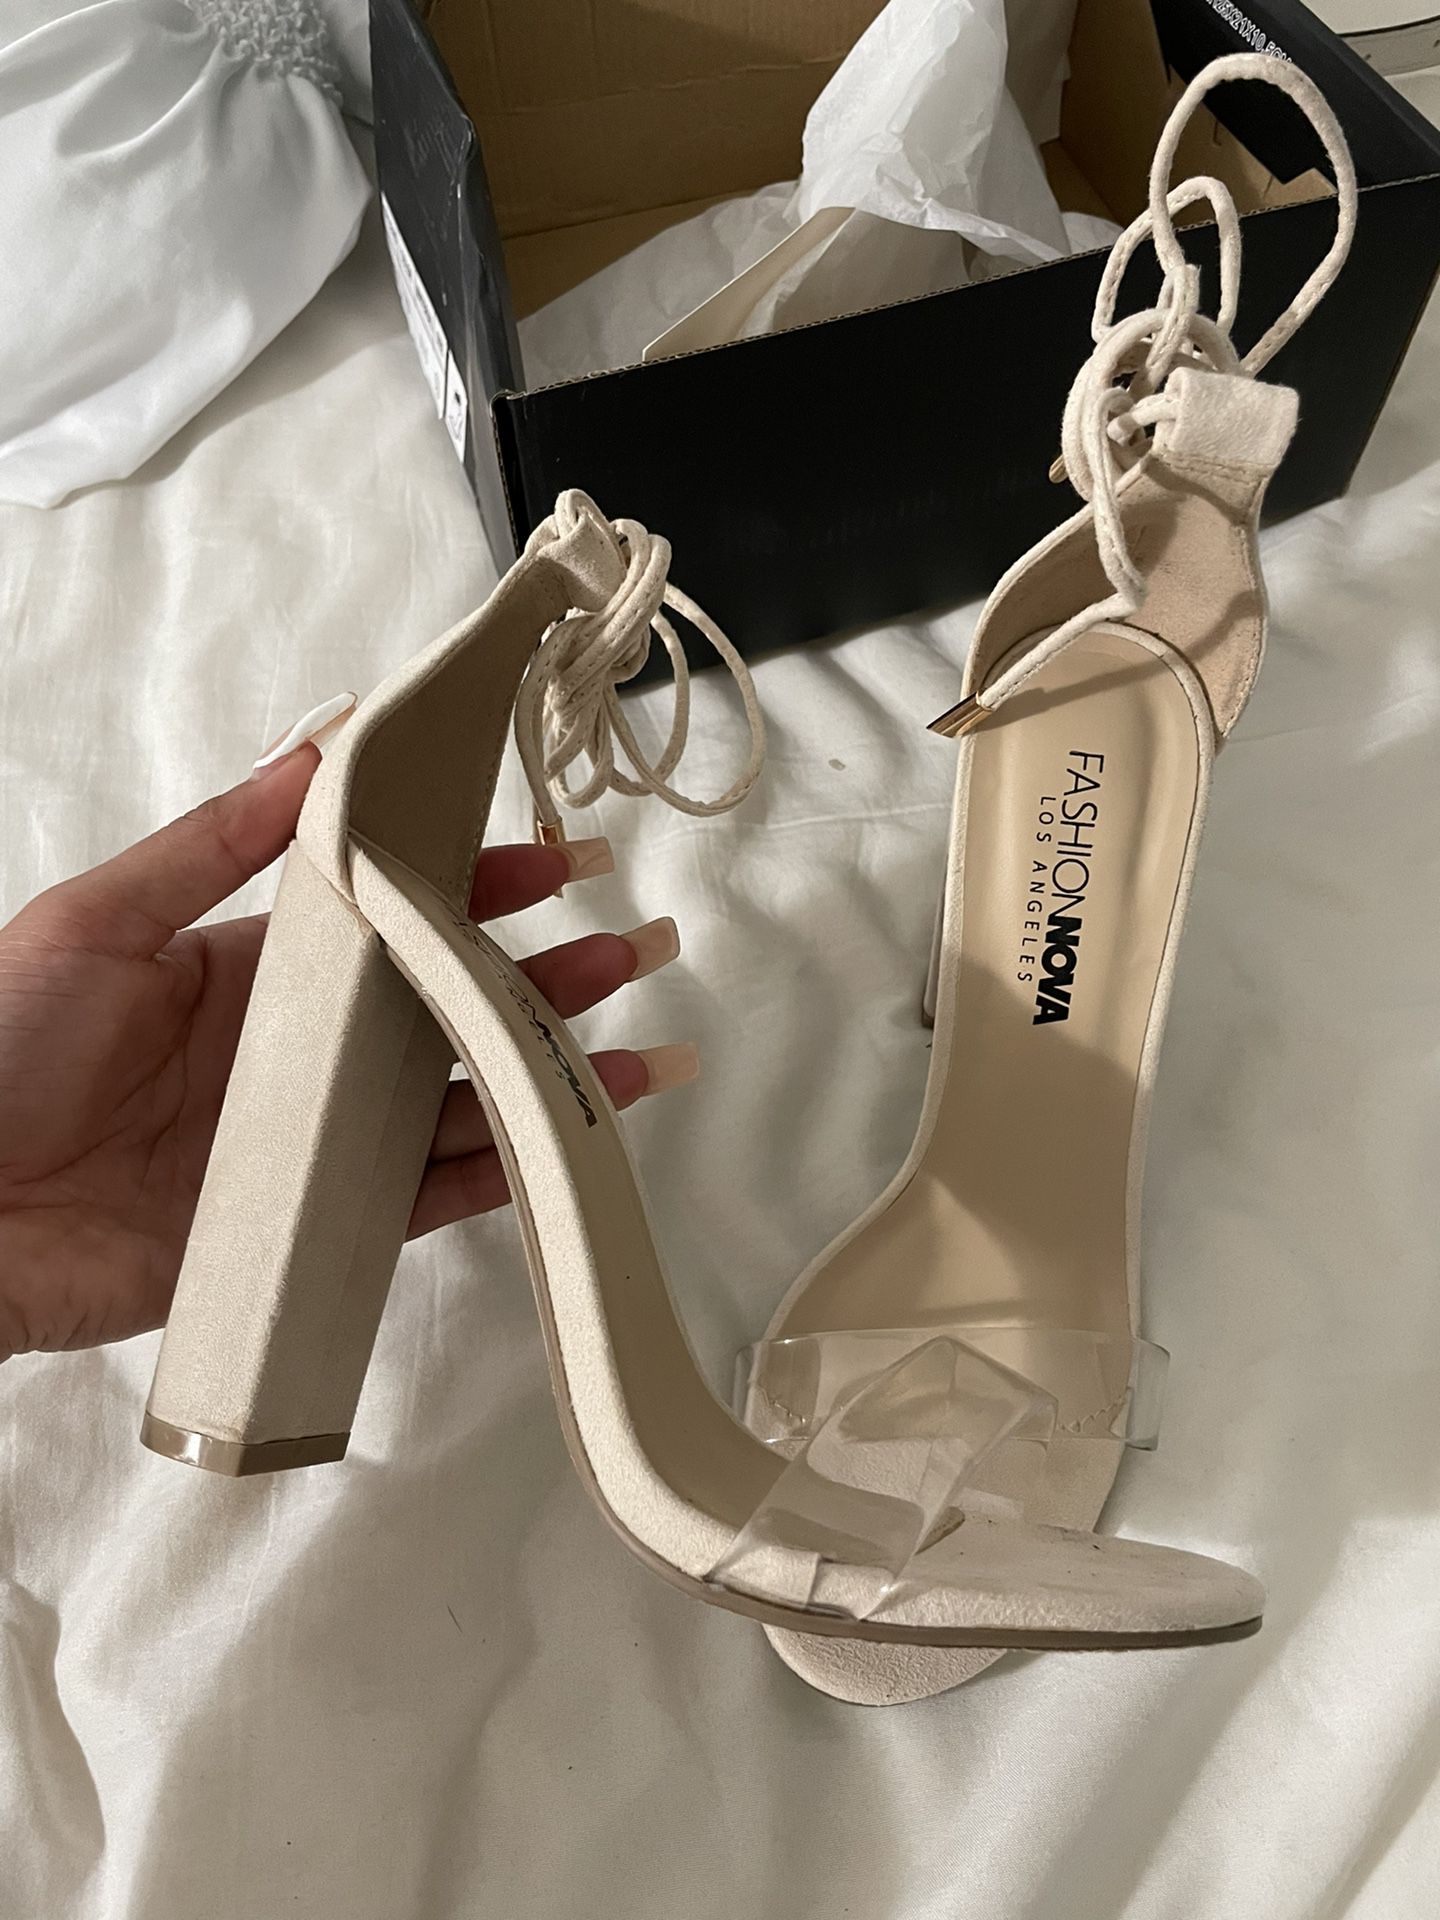 Fashion Nova Heels 5.5